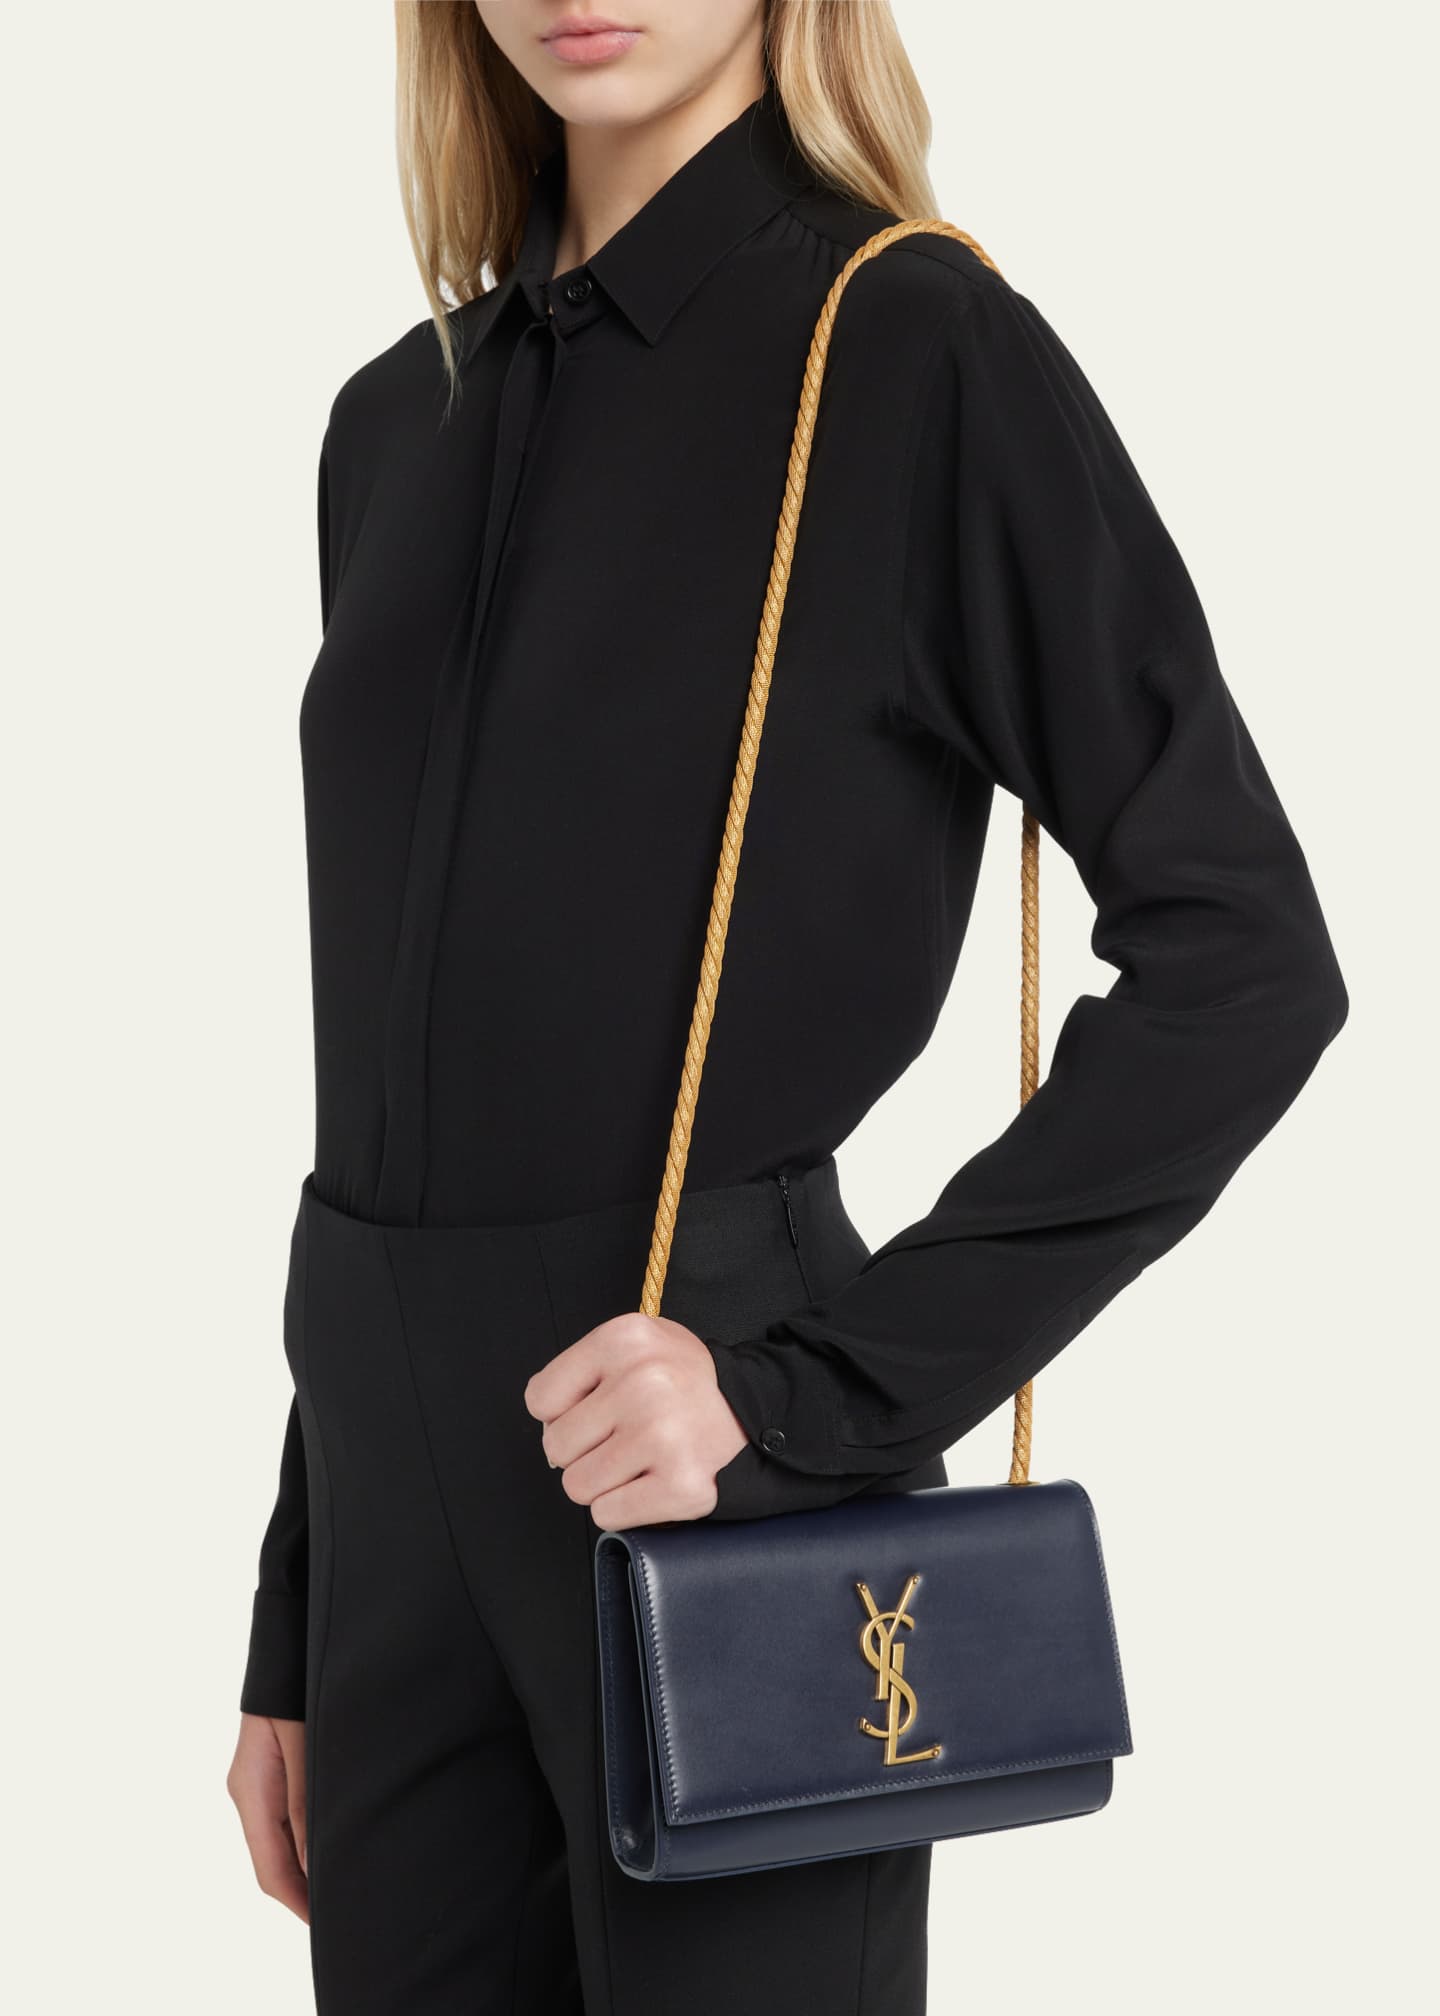 Saint Laurent Kate YSL Flap Leather Chain Shoulder Bag